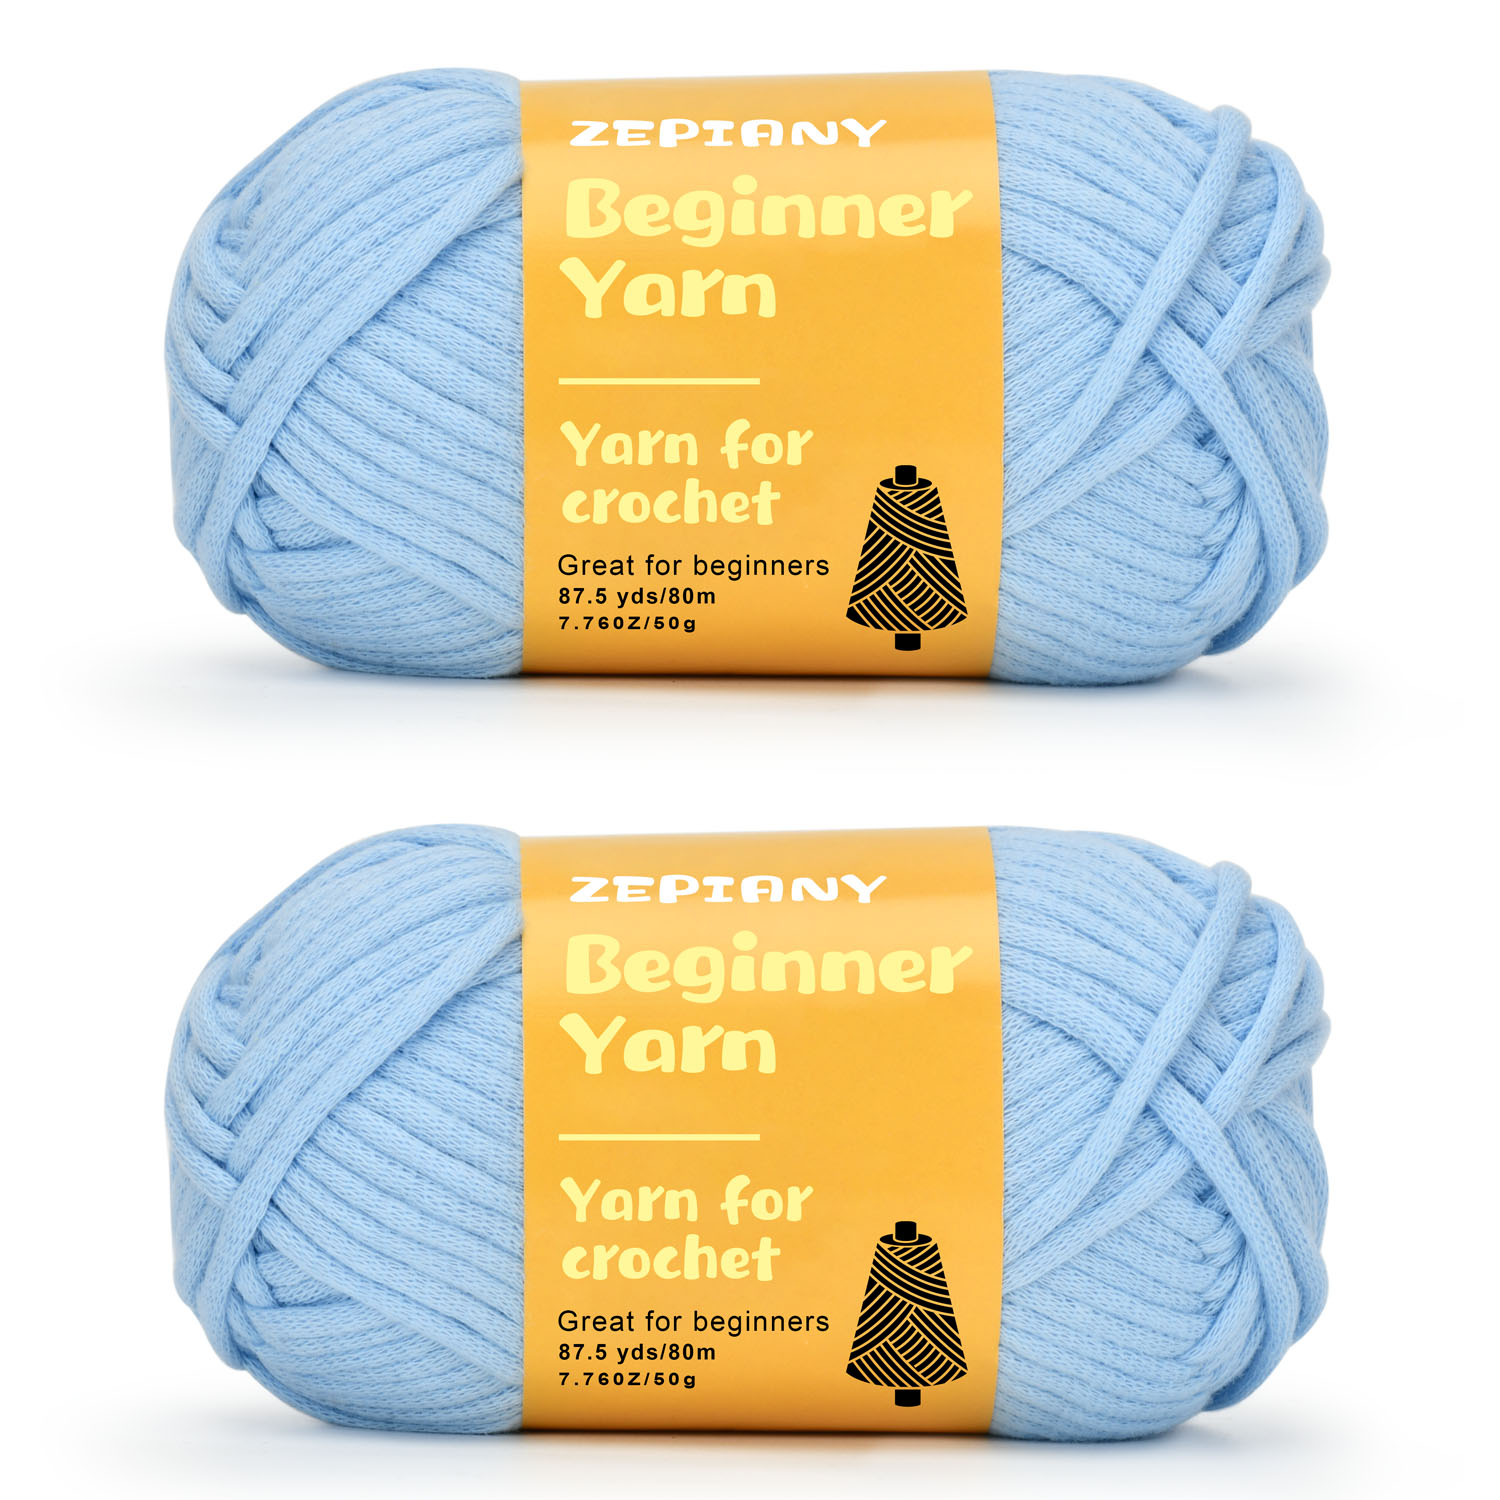 Soft Yarn for Crocheting – Crochet & Knitting Yarn, Beginner Yarn with  Easy-to-See Stitches, 24 x 50g - 2400 Yards Amigurumi Yarn, Cotton-Nylon  Blend